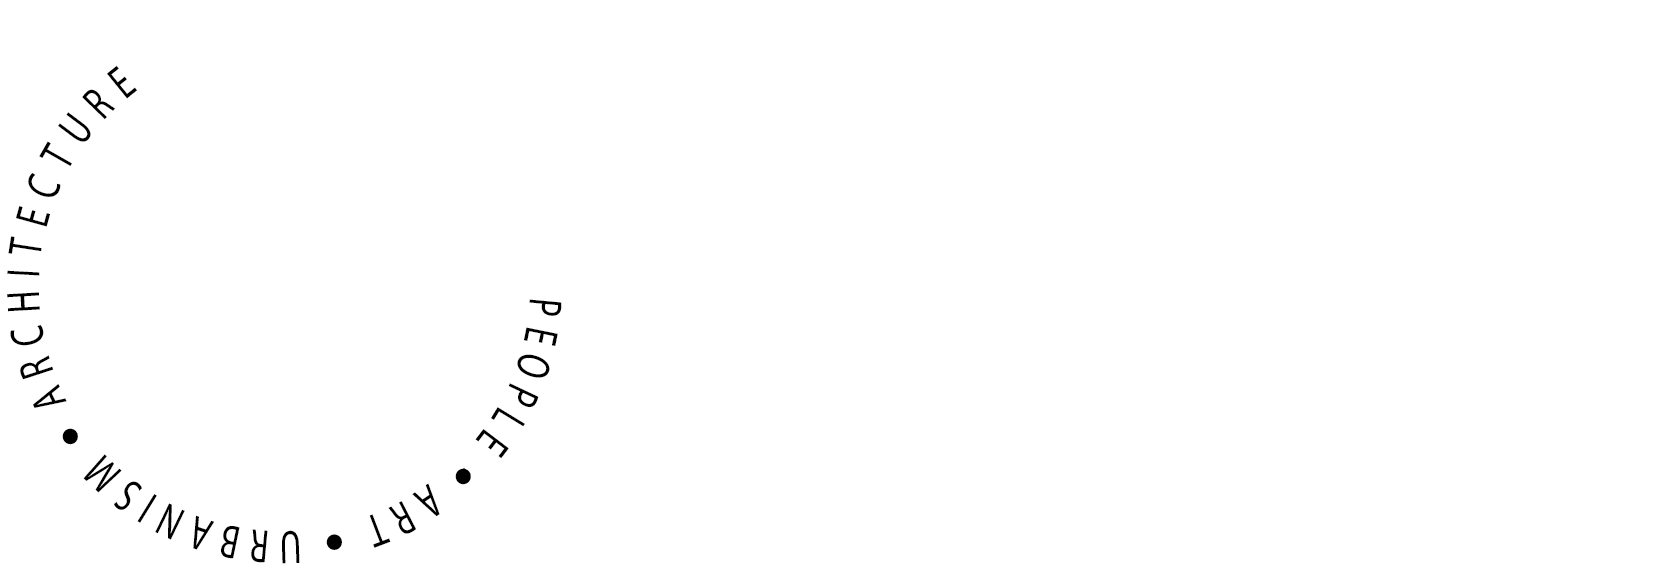 PAU-a